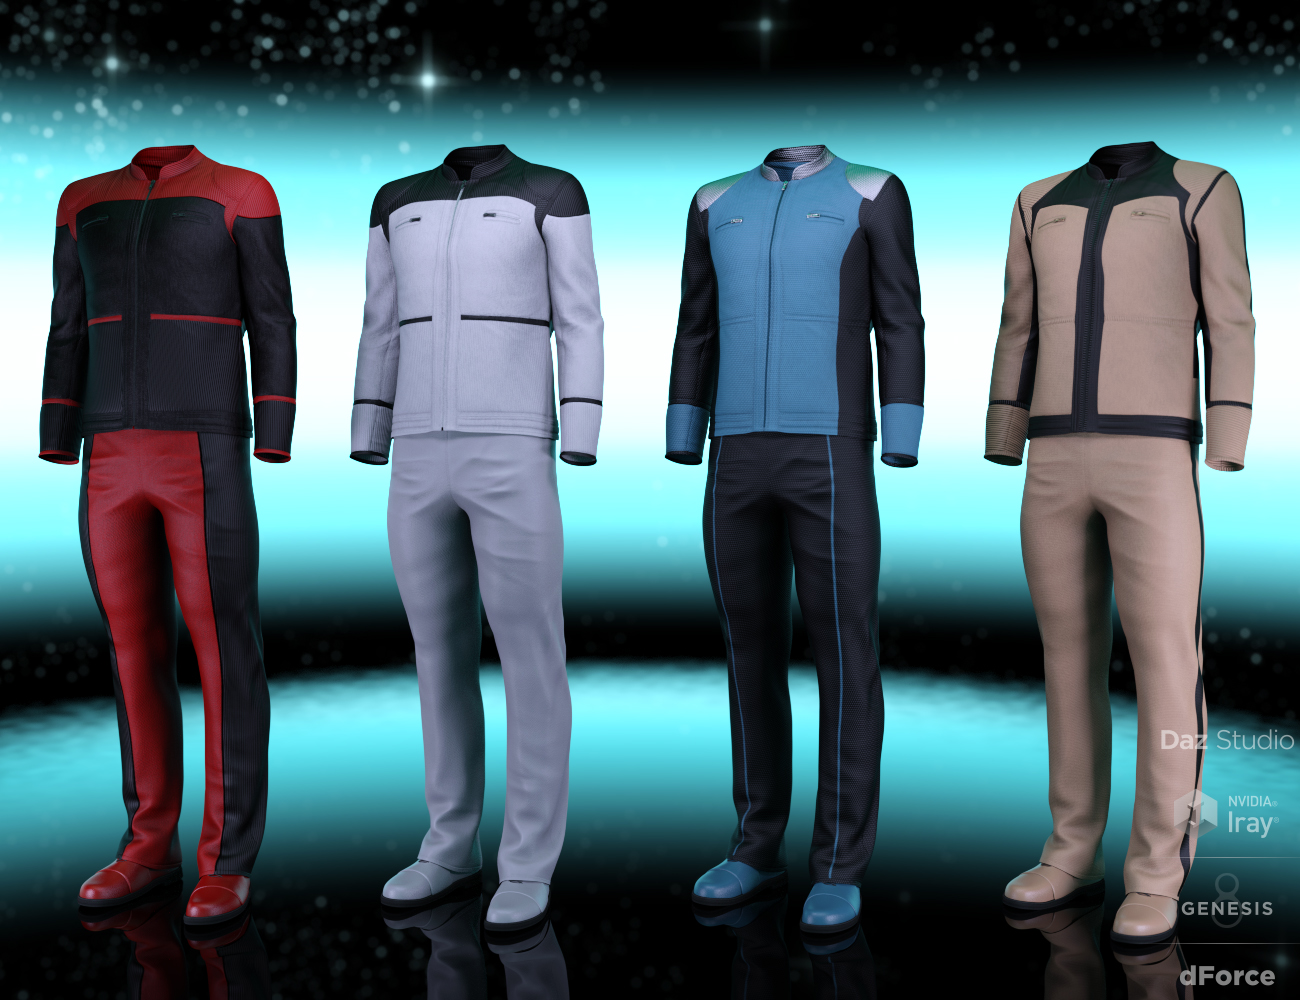 dForce Bridge Officer Outfit Textures by: DestinysGarden, 3D Models by Daz 3D